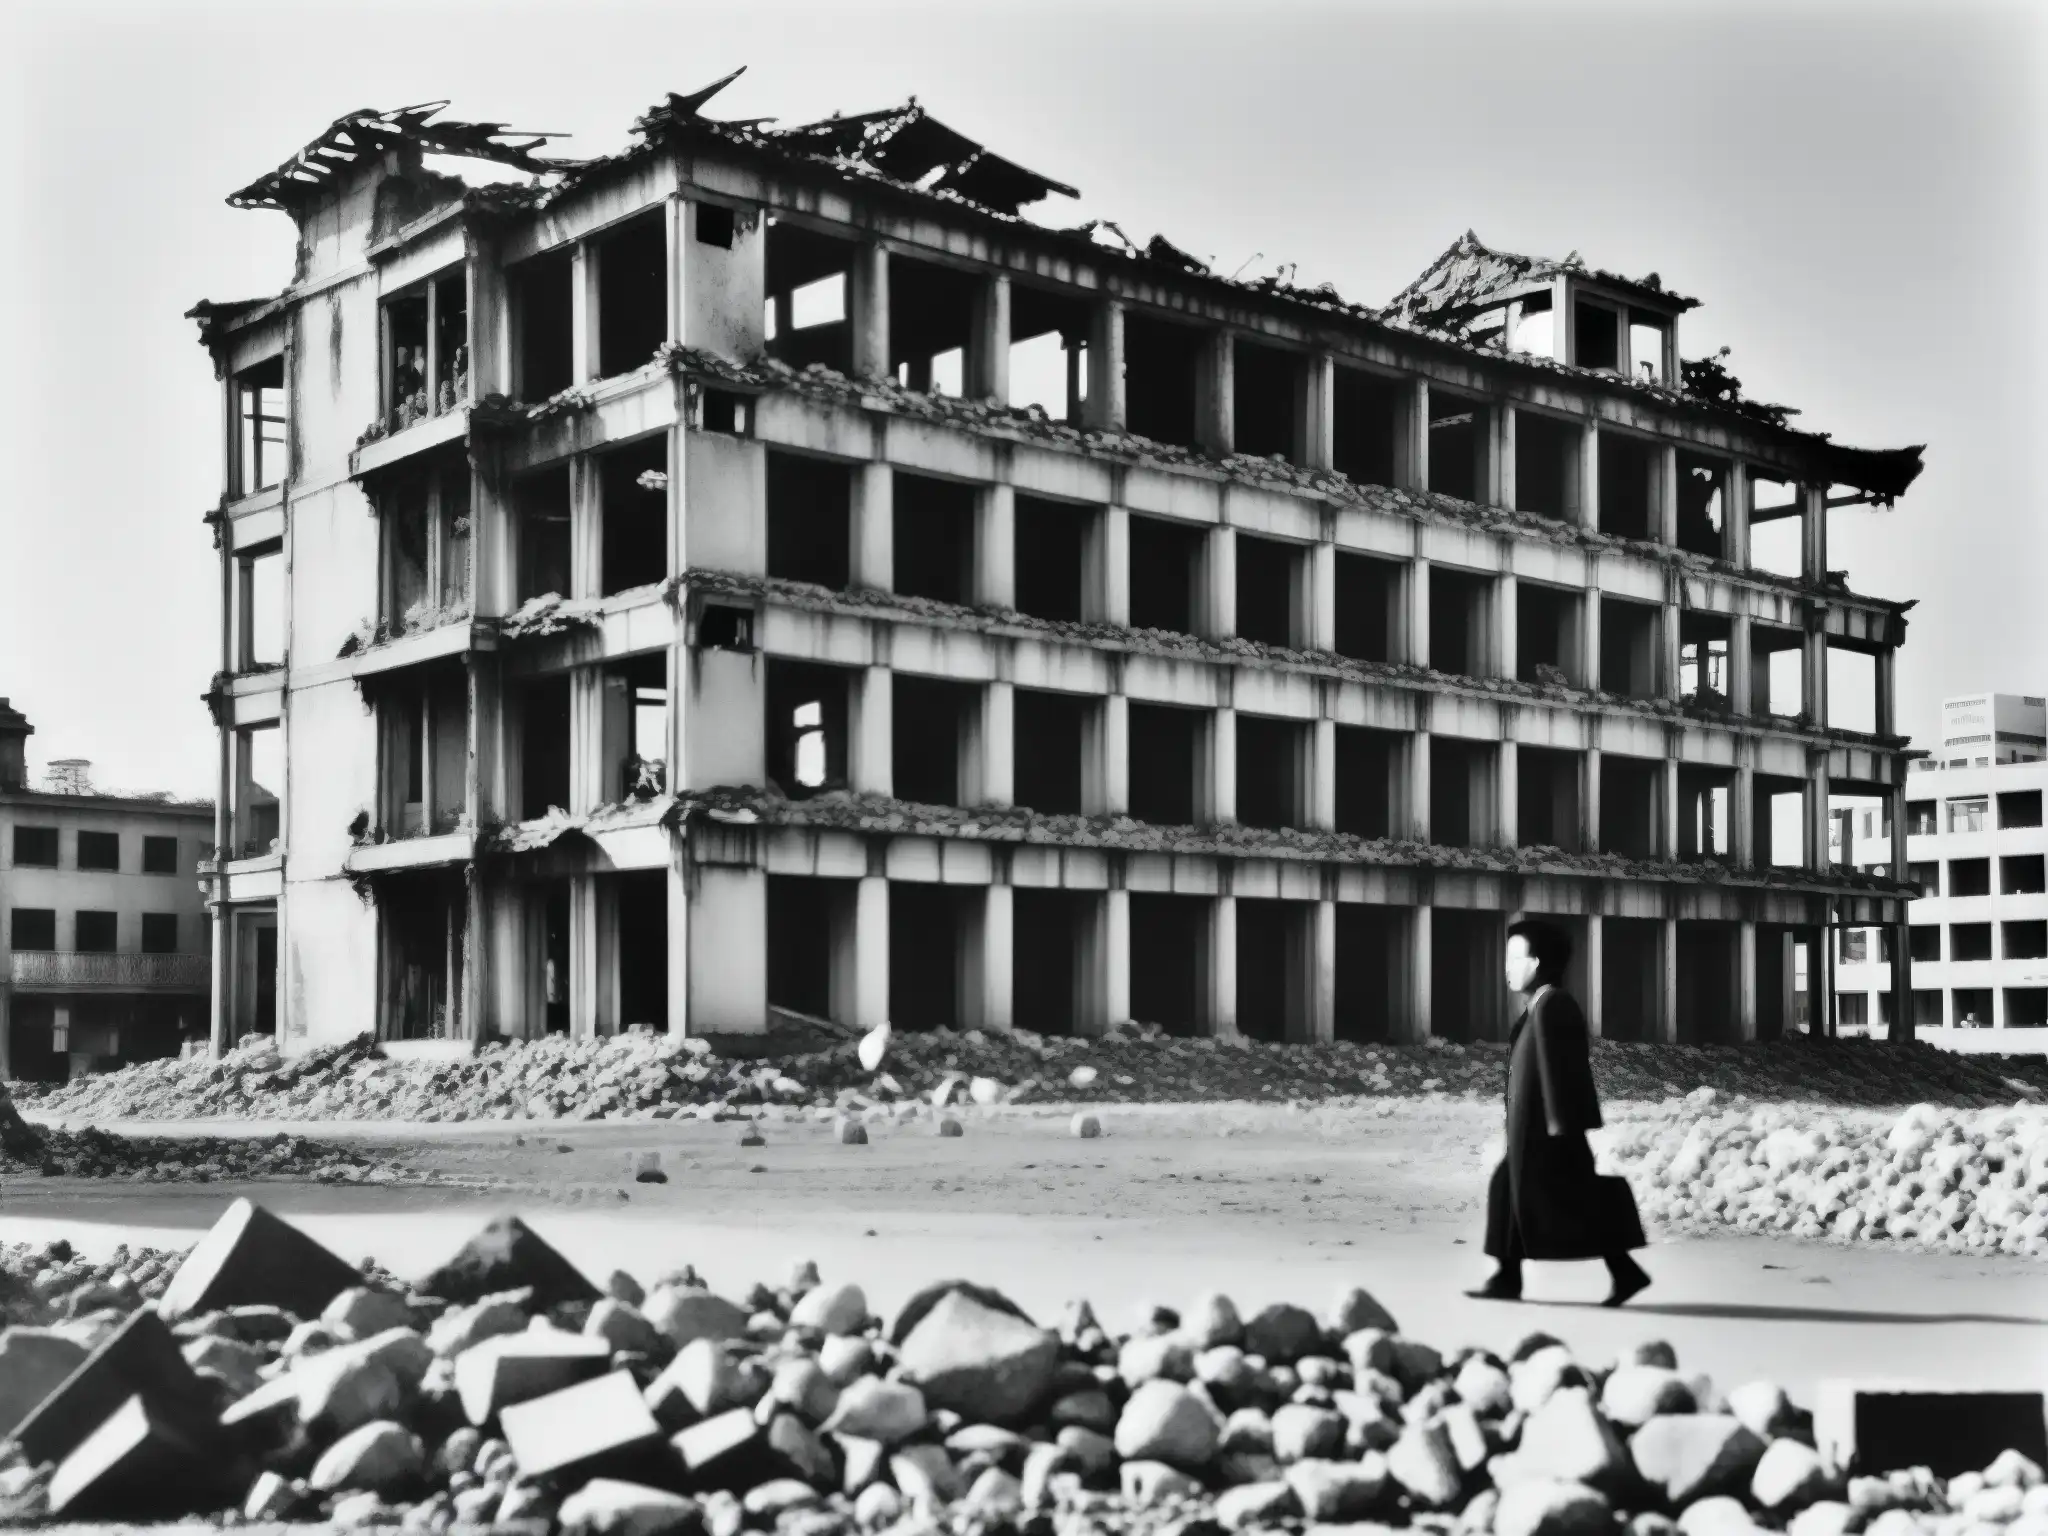 Los fantasmas de la Bomba Atómica: la devastación de Hiroshima capturada en una imagen desoladora en blanco y negro